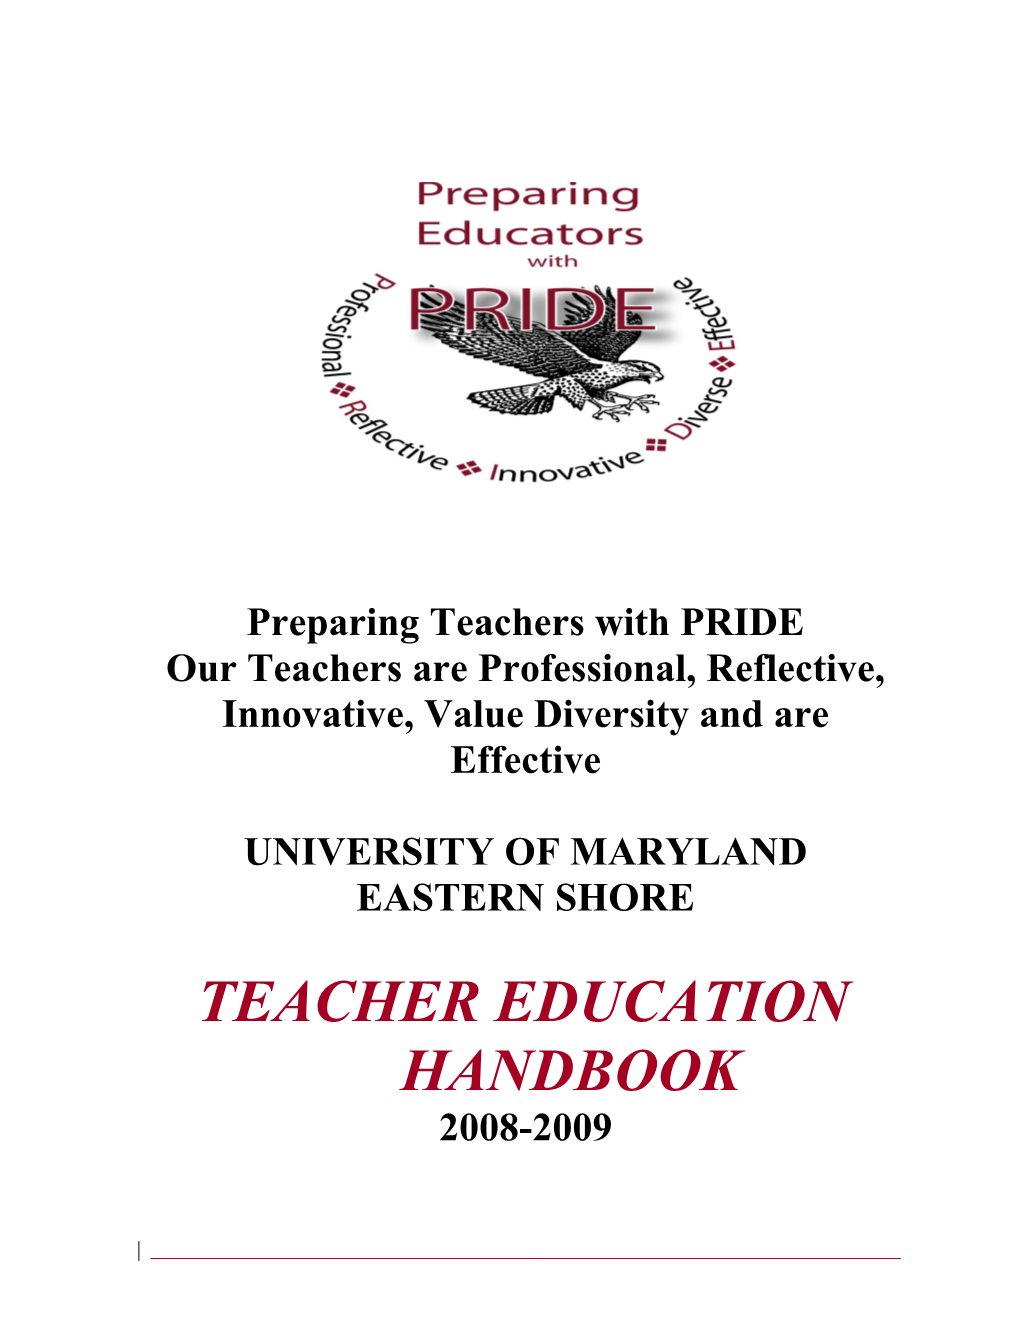 Preparing Teachers with PRIDE